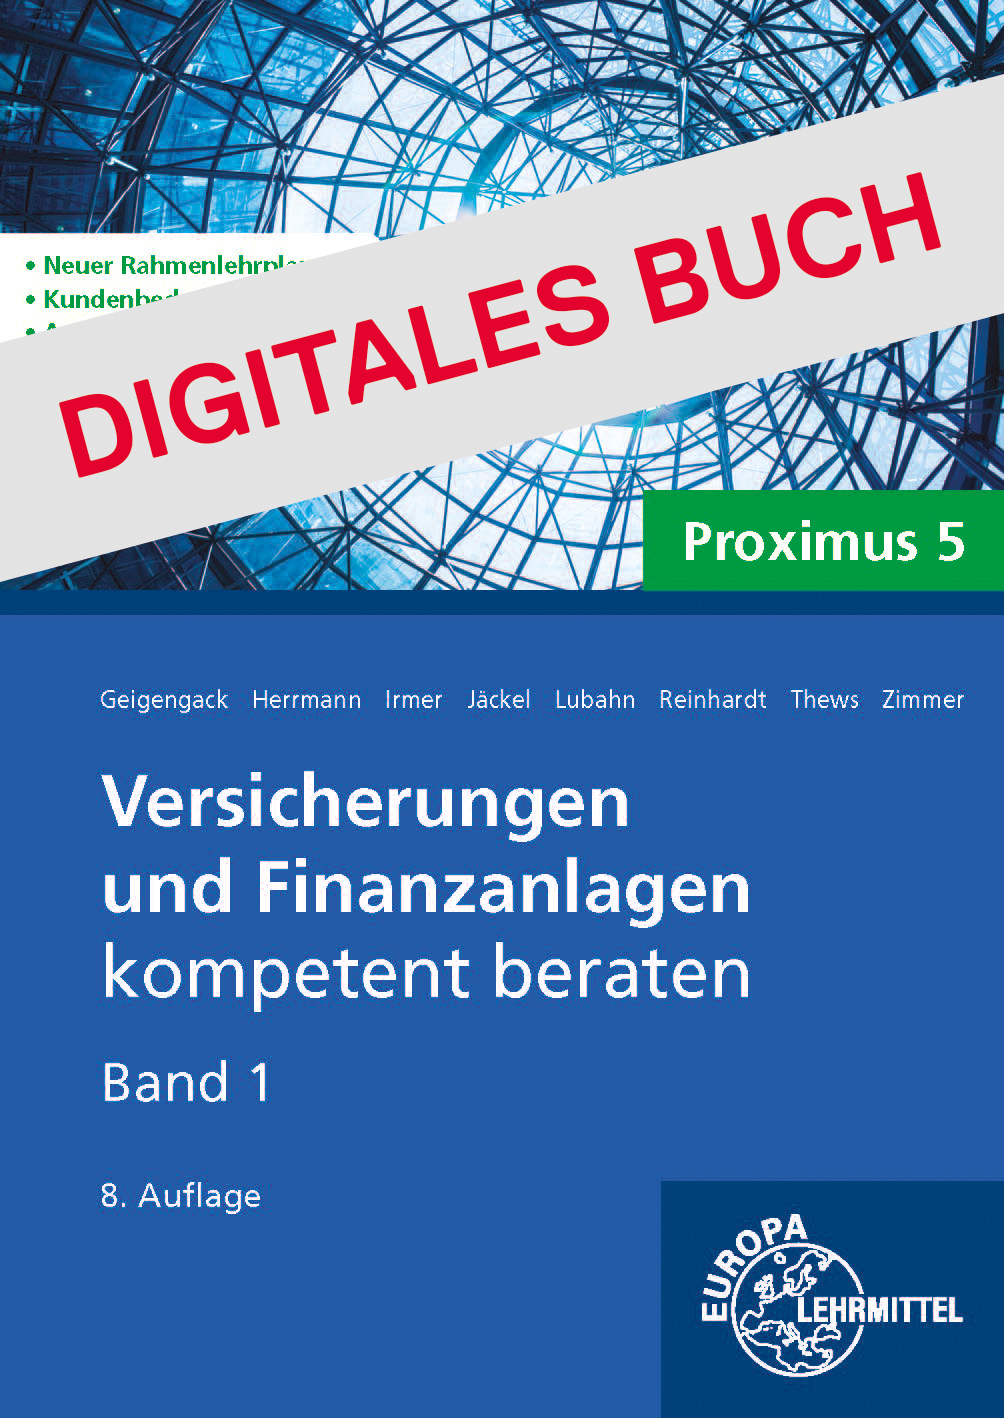 Versicherungen und Finanzanlagen, Band 1, Proximus 5 - Digitales Buch